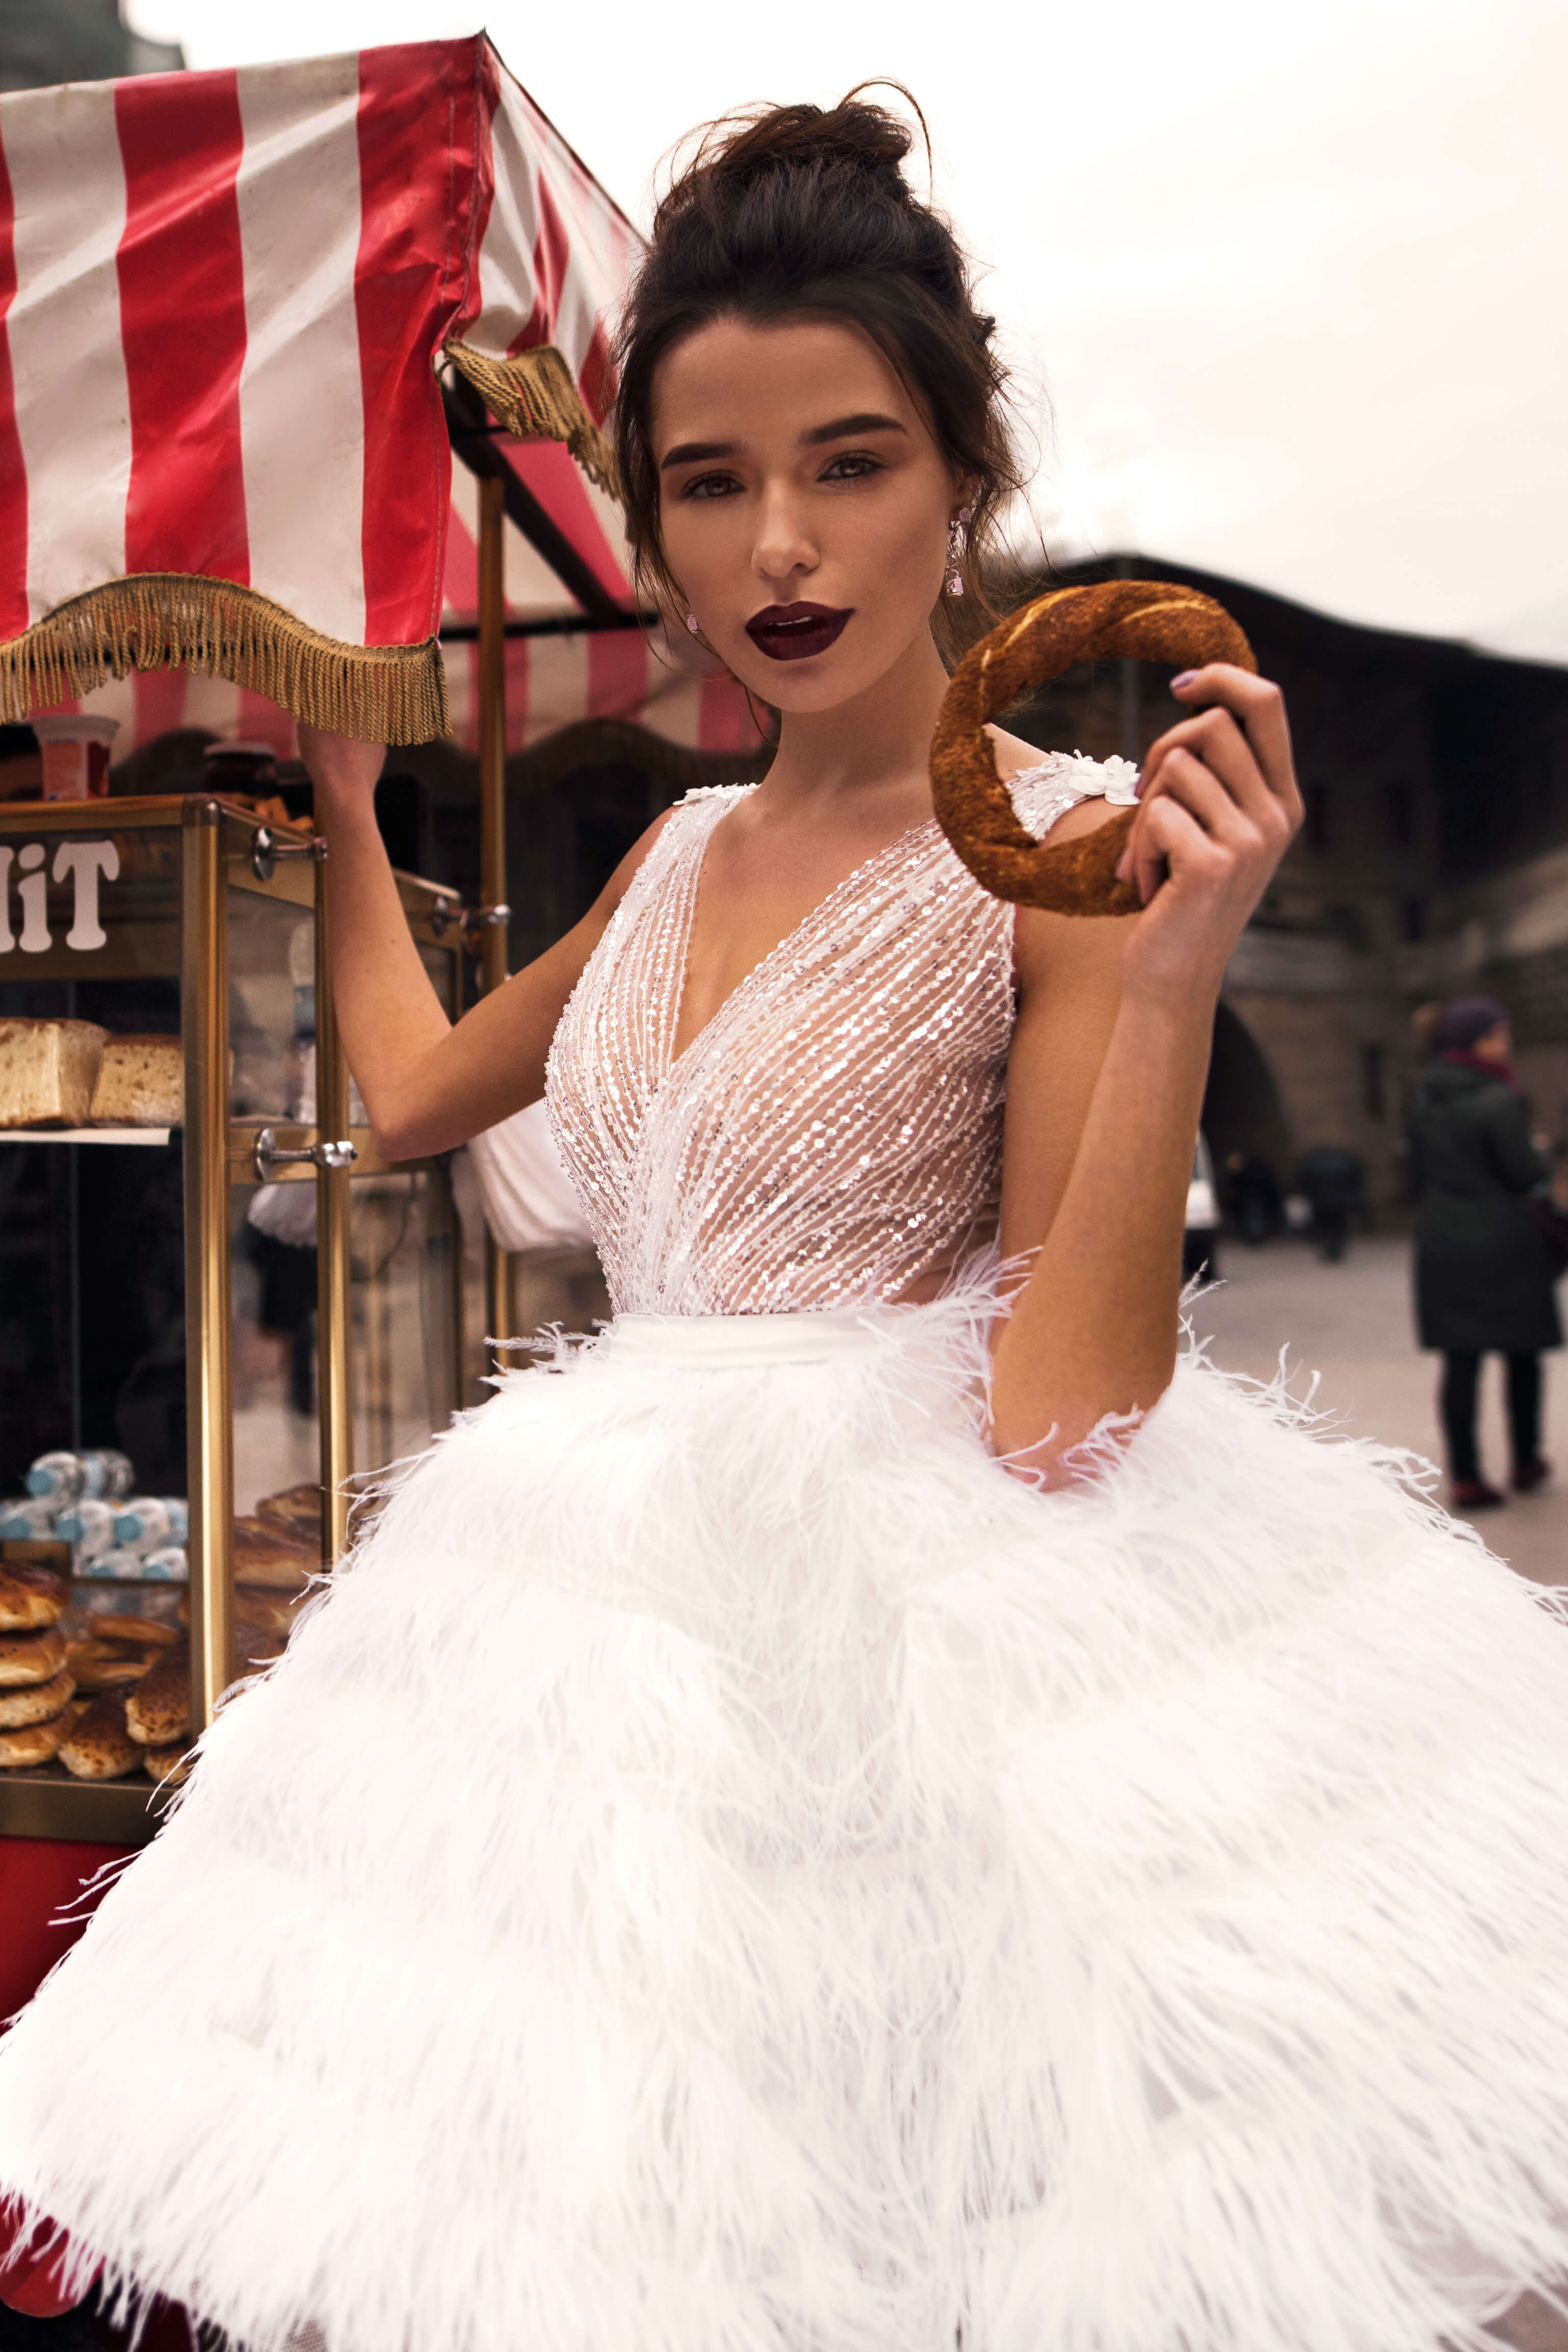 Купить свадебное платье «Алисия» Бламмо Биамо из коллекции 2018 года в Нижнем Новгороде